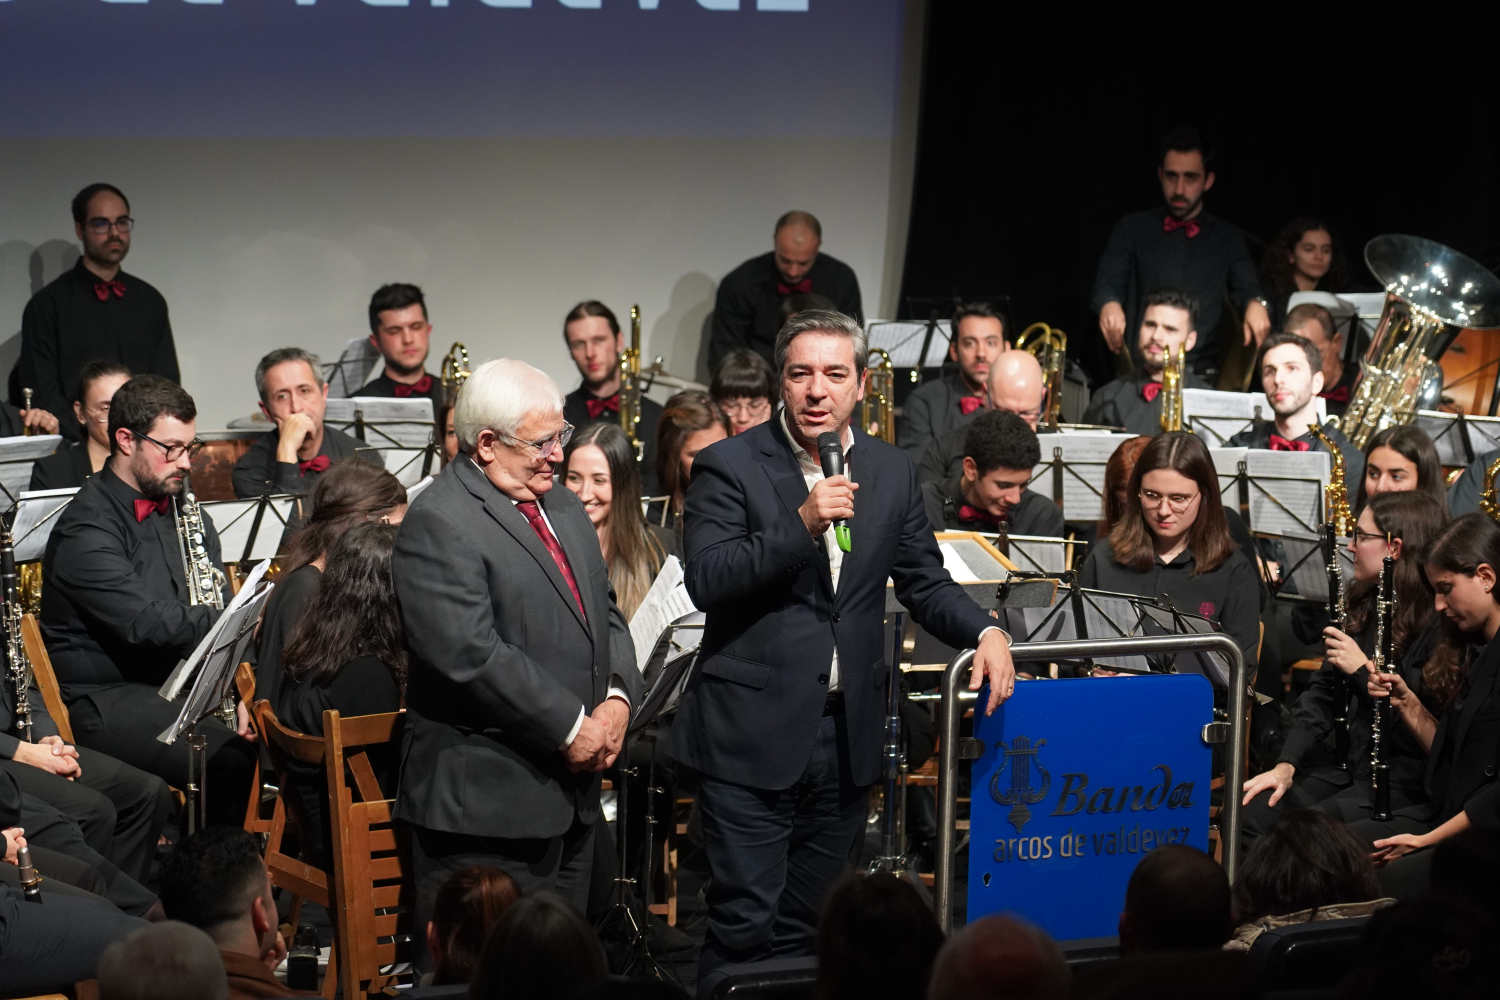 ARCOS DE VALDEVEZ: Município ´amou` concerto da Banda Social Musical e fala em ´arranjos musicais de atestada qualidade`